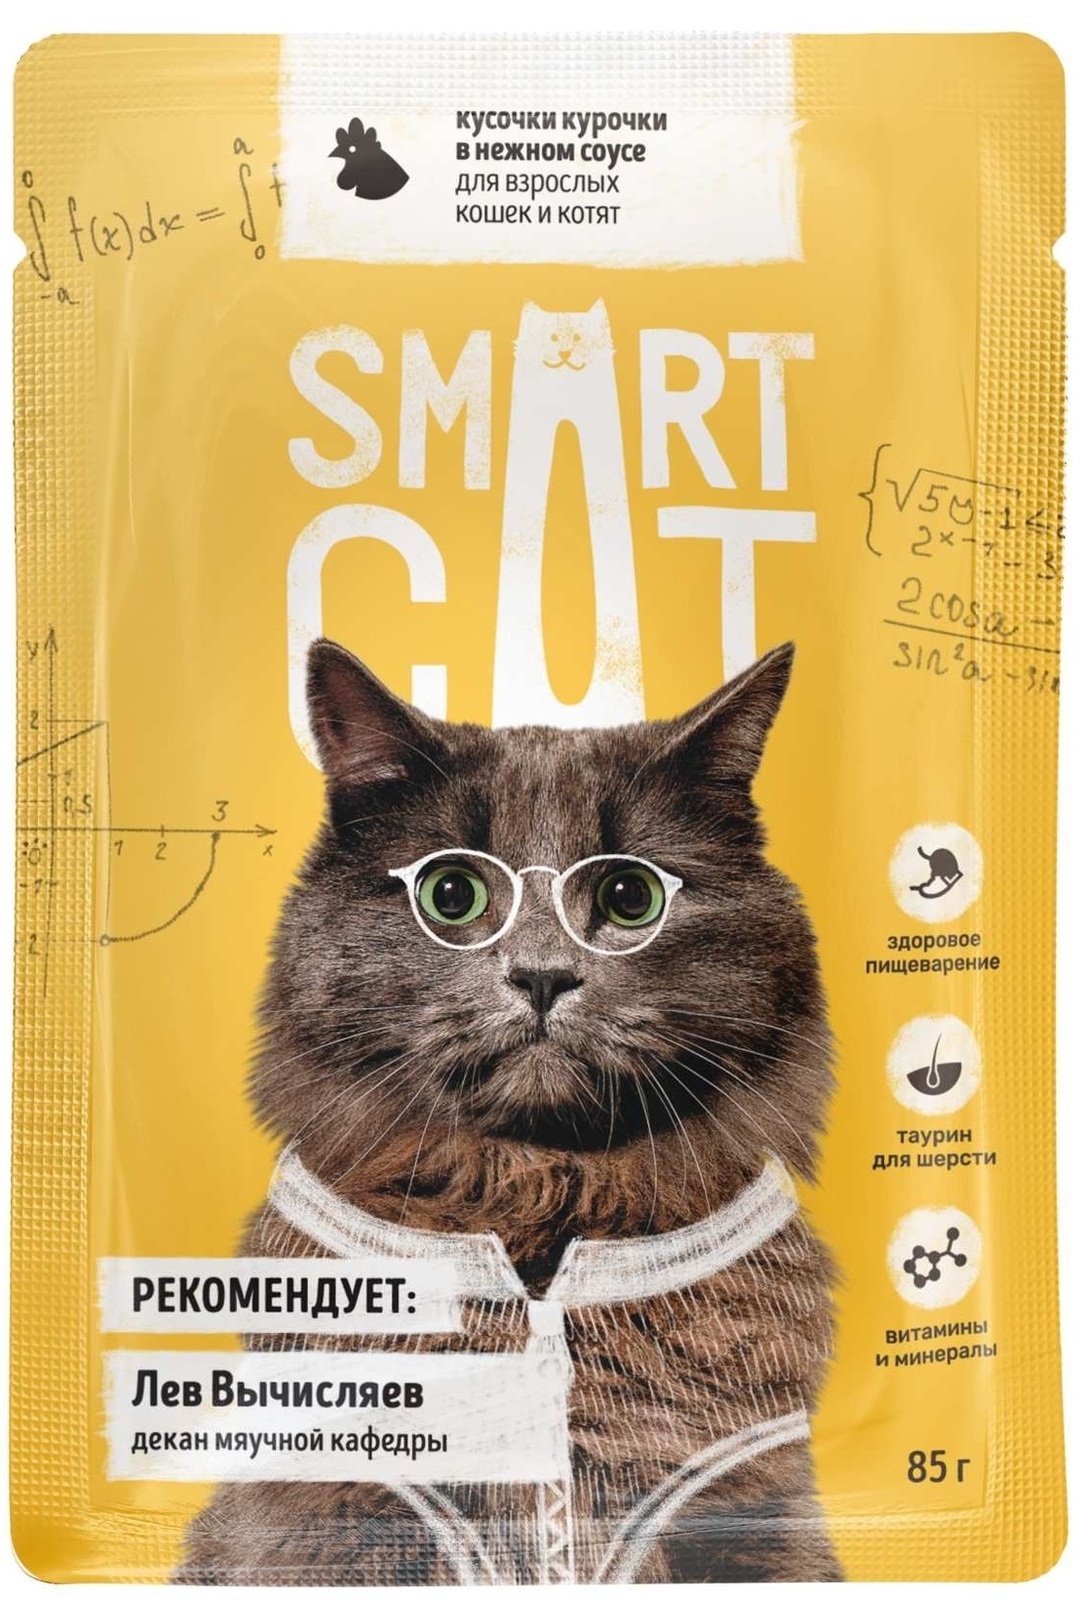 Smart Cat Smart Cat паучи для взрослых кошек и котят: кусочки курочки в нежном соусе (85 г) 37038